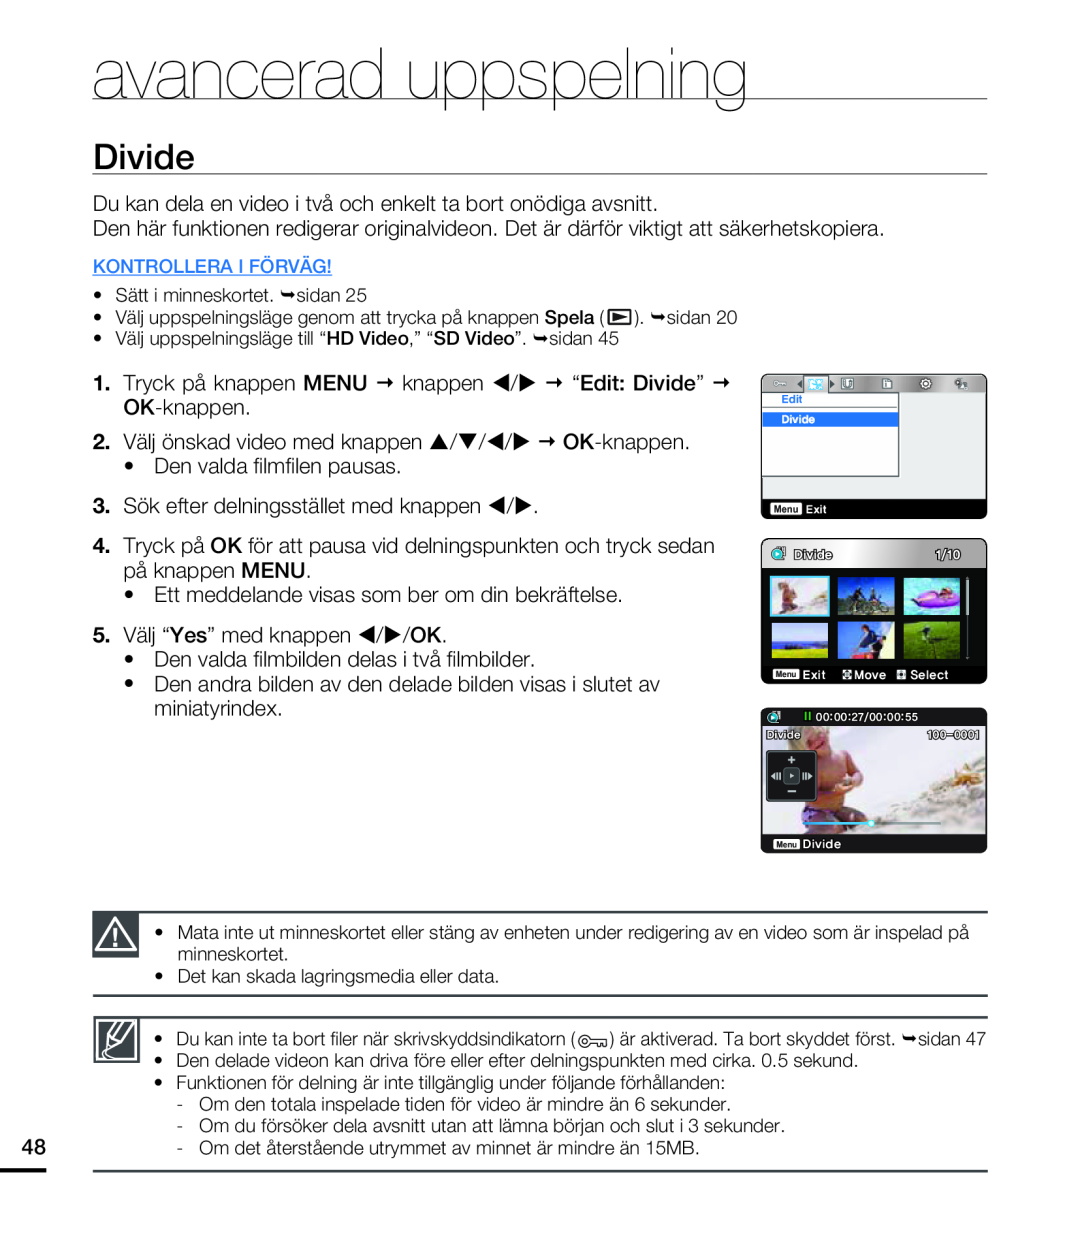 Samsung HMX-U20BP/EDC manual Divide, avancerad uppspelning, OK-knappen 